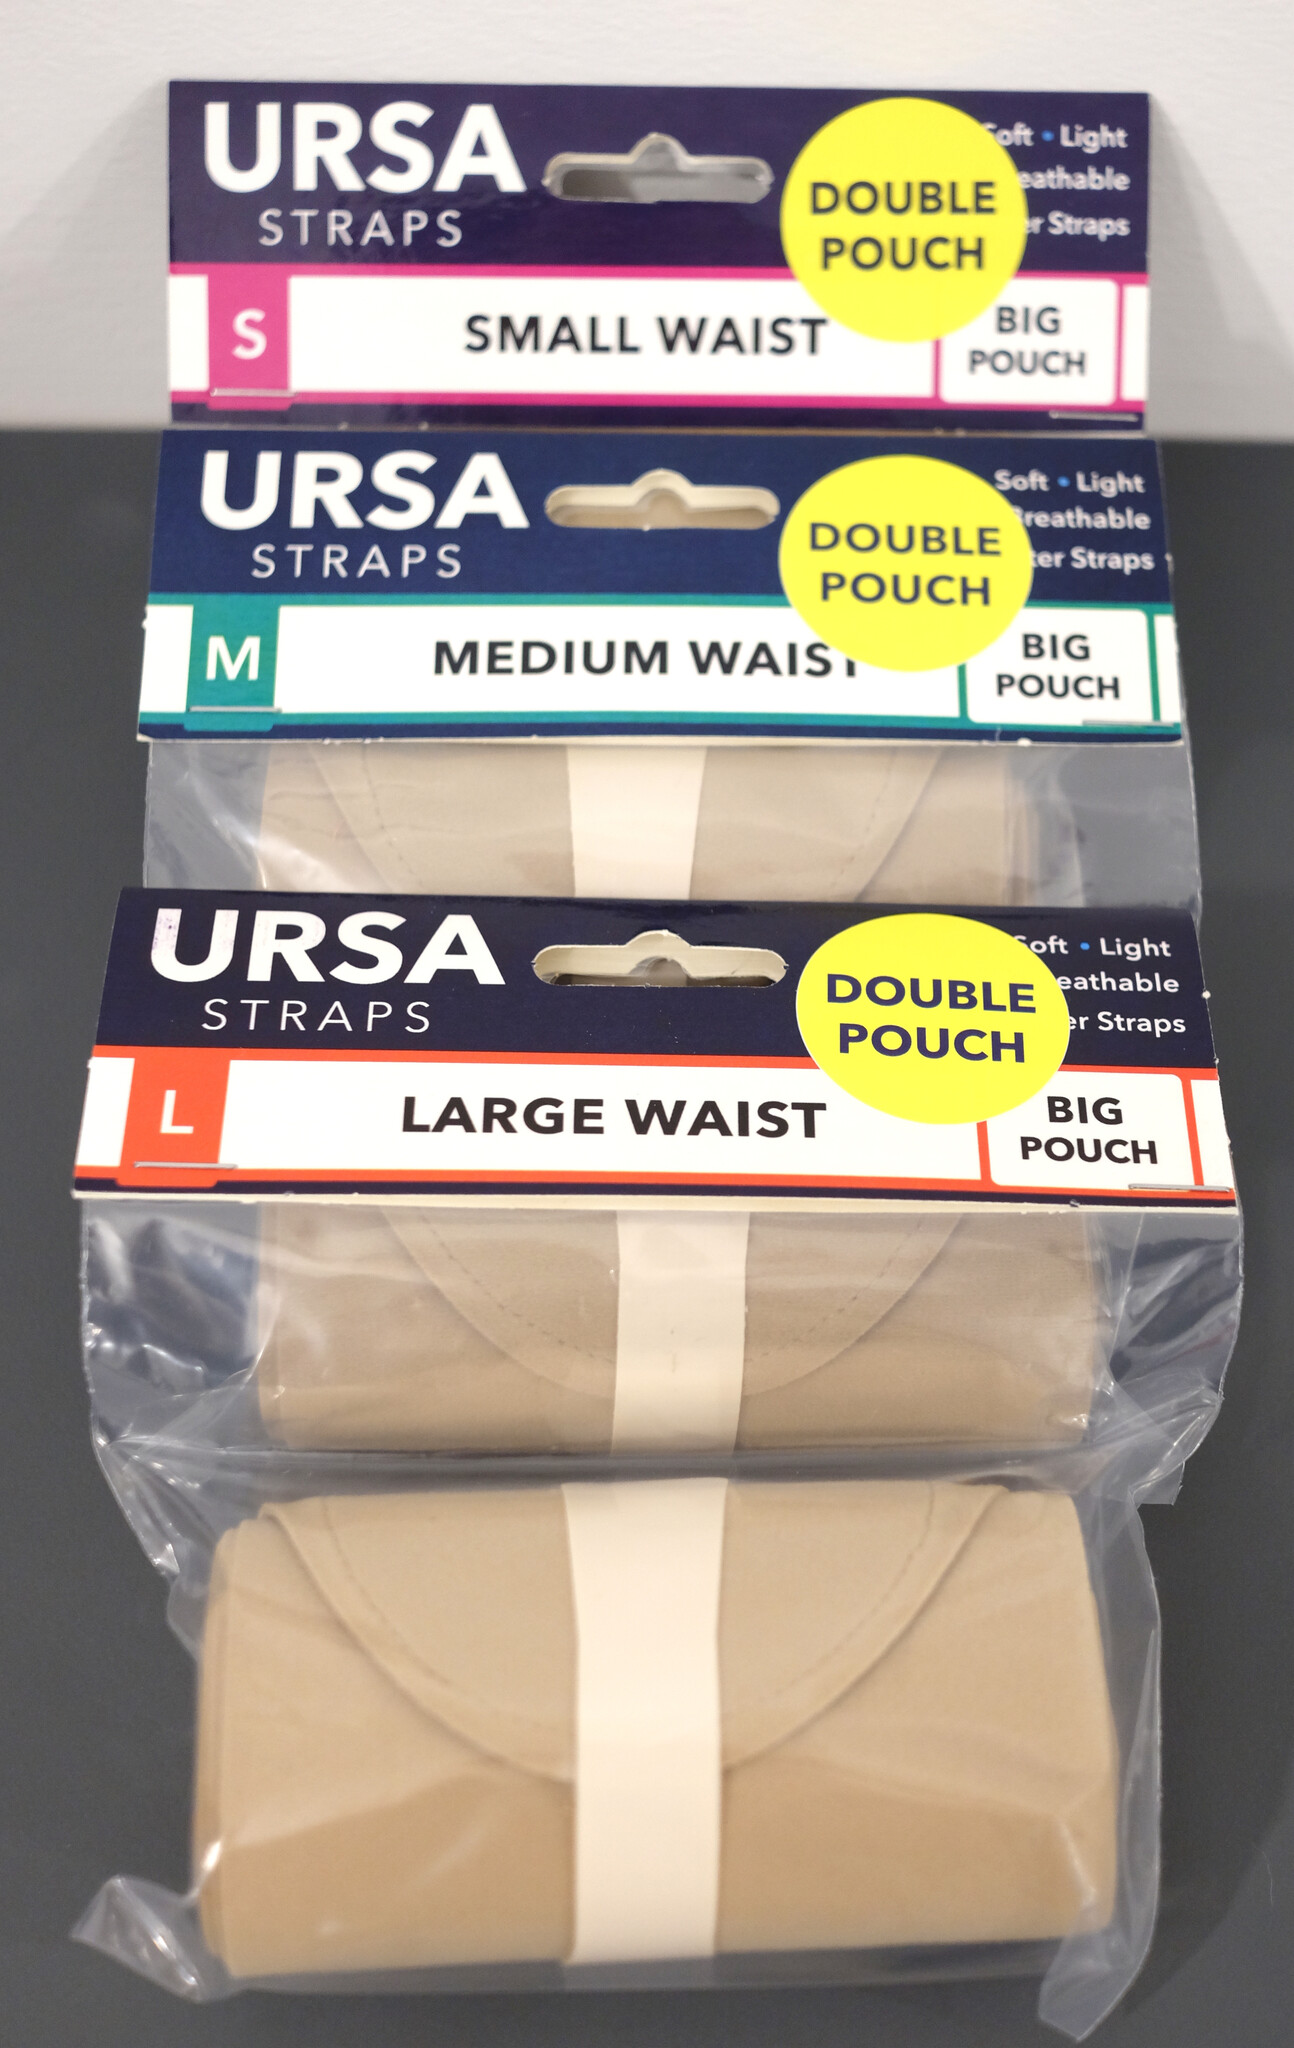 URSA URSA - Waist-Strap (Taille) - Double Pouch